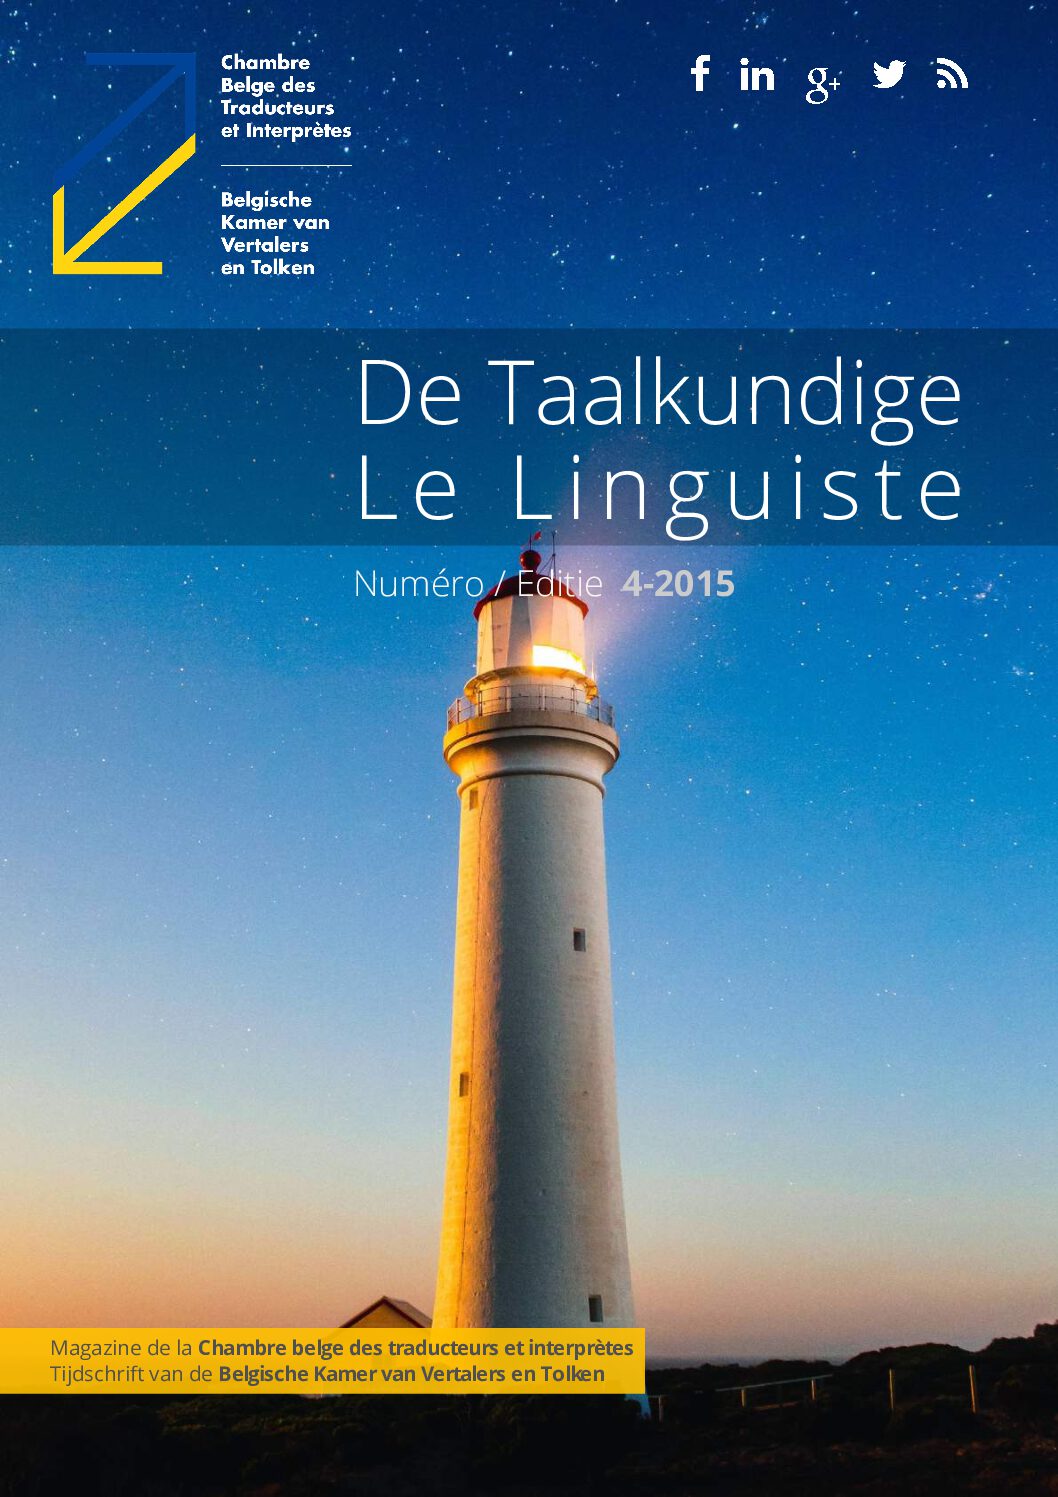 Image de présentation pour le document : De Taalkundige – Le Linguiste 2015 / 4